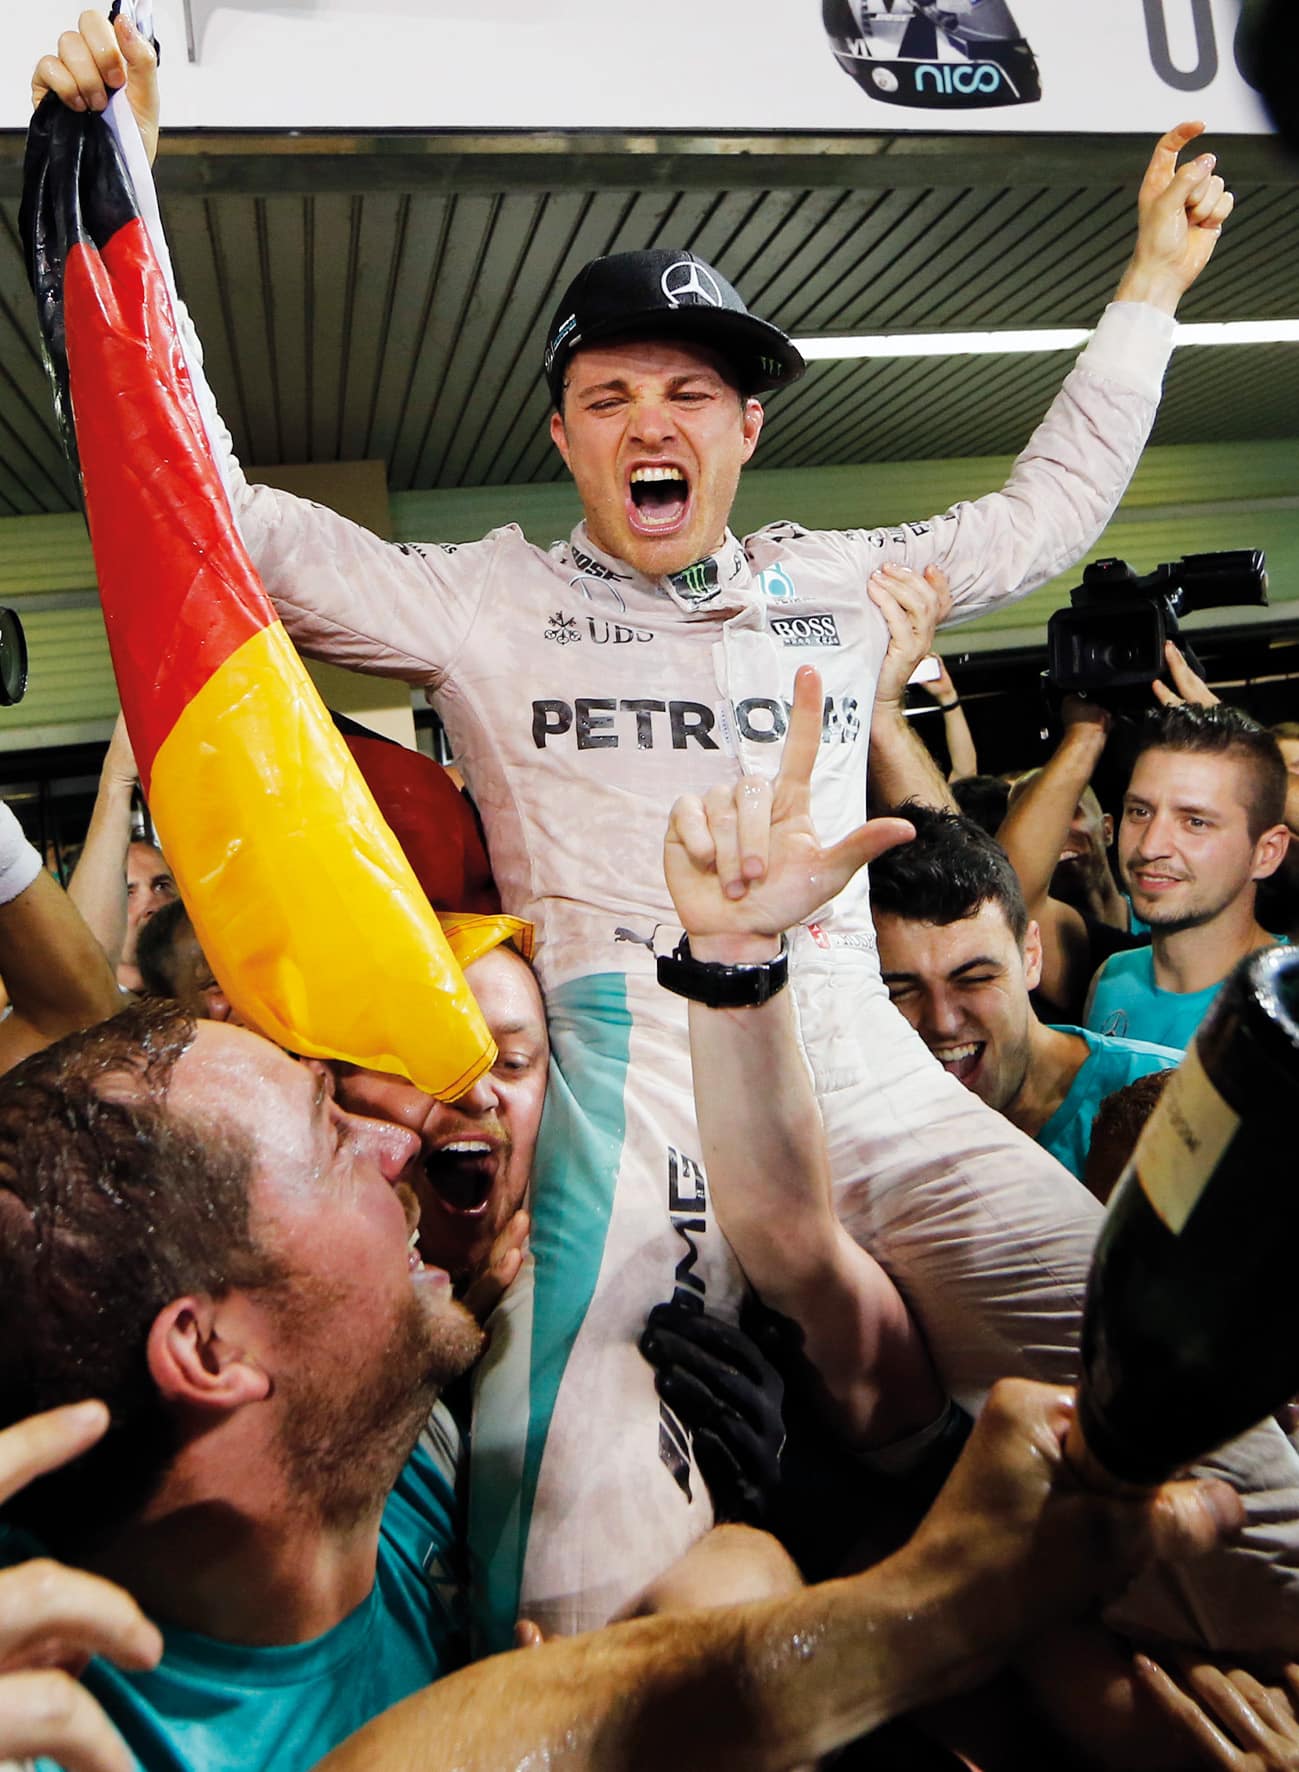 HoF Nico Rosberg